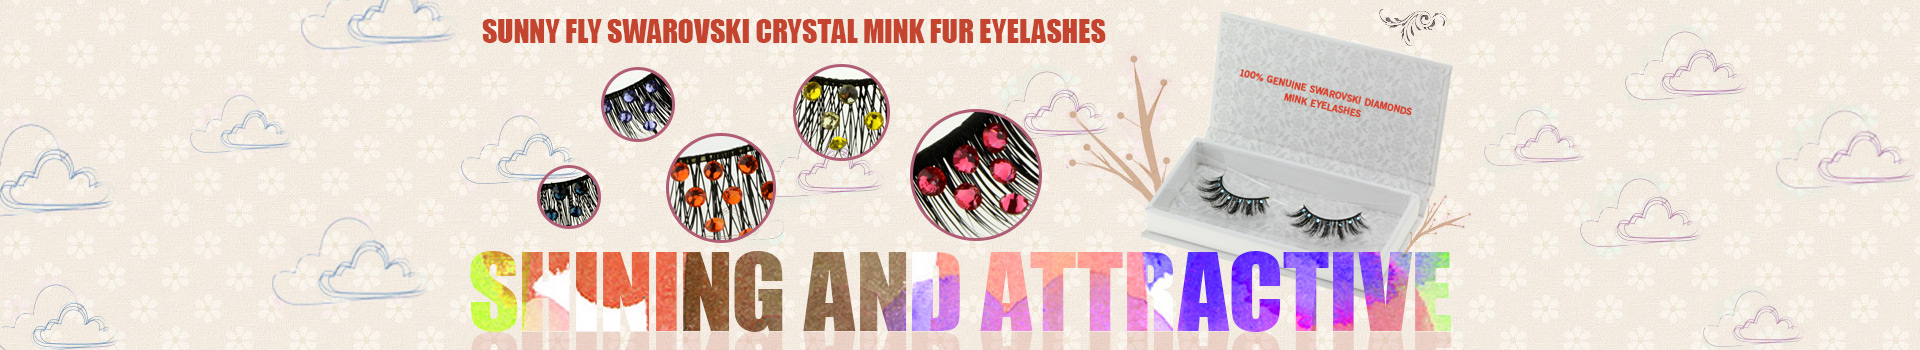 Swarovski Crystal Mink Fur Eyelashes MS18